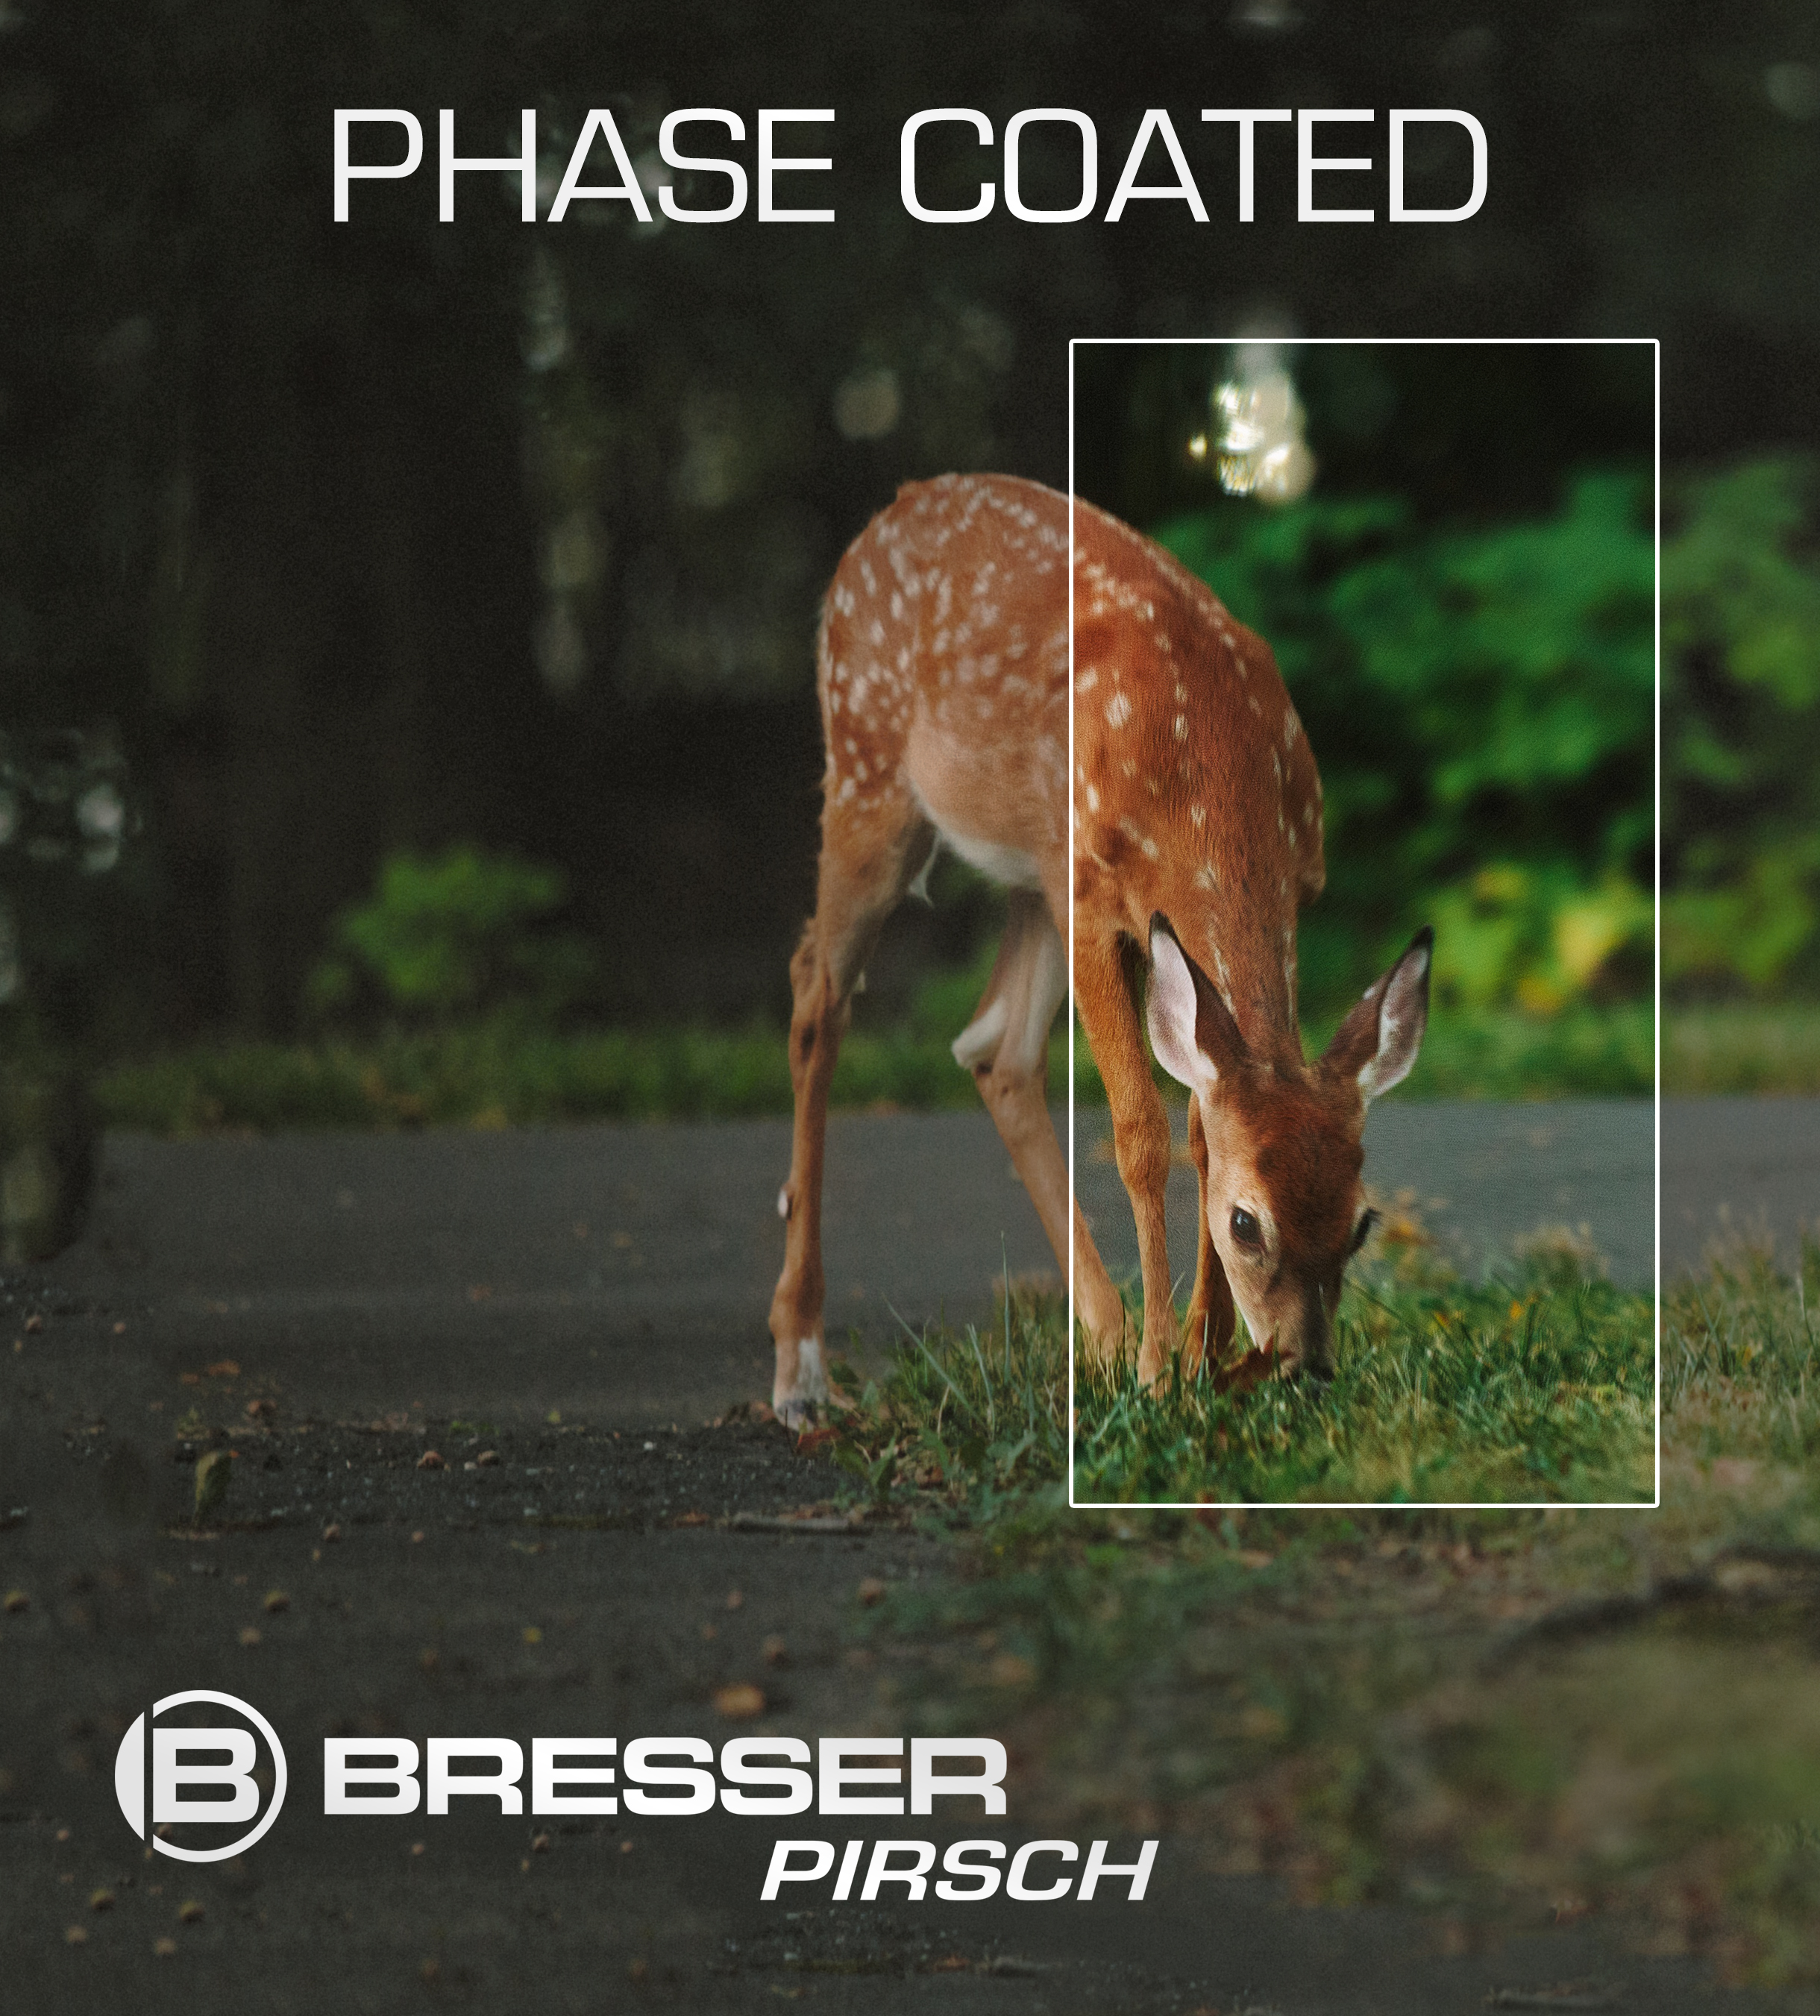 BRESSER Pirsch jumelles 10x42 Phase Coating